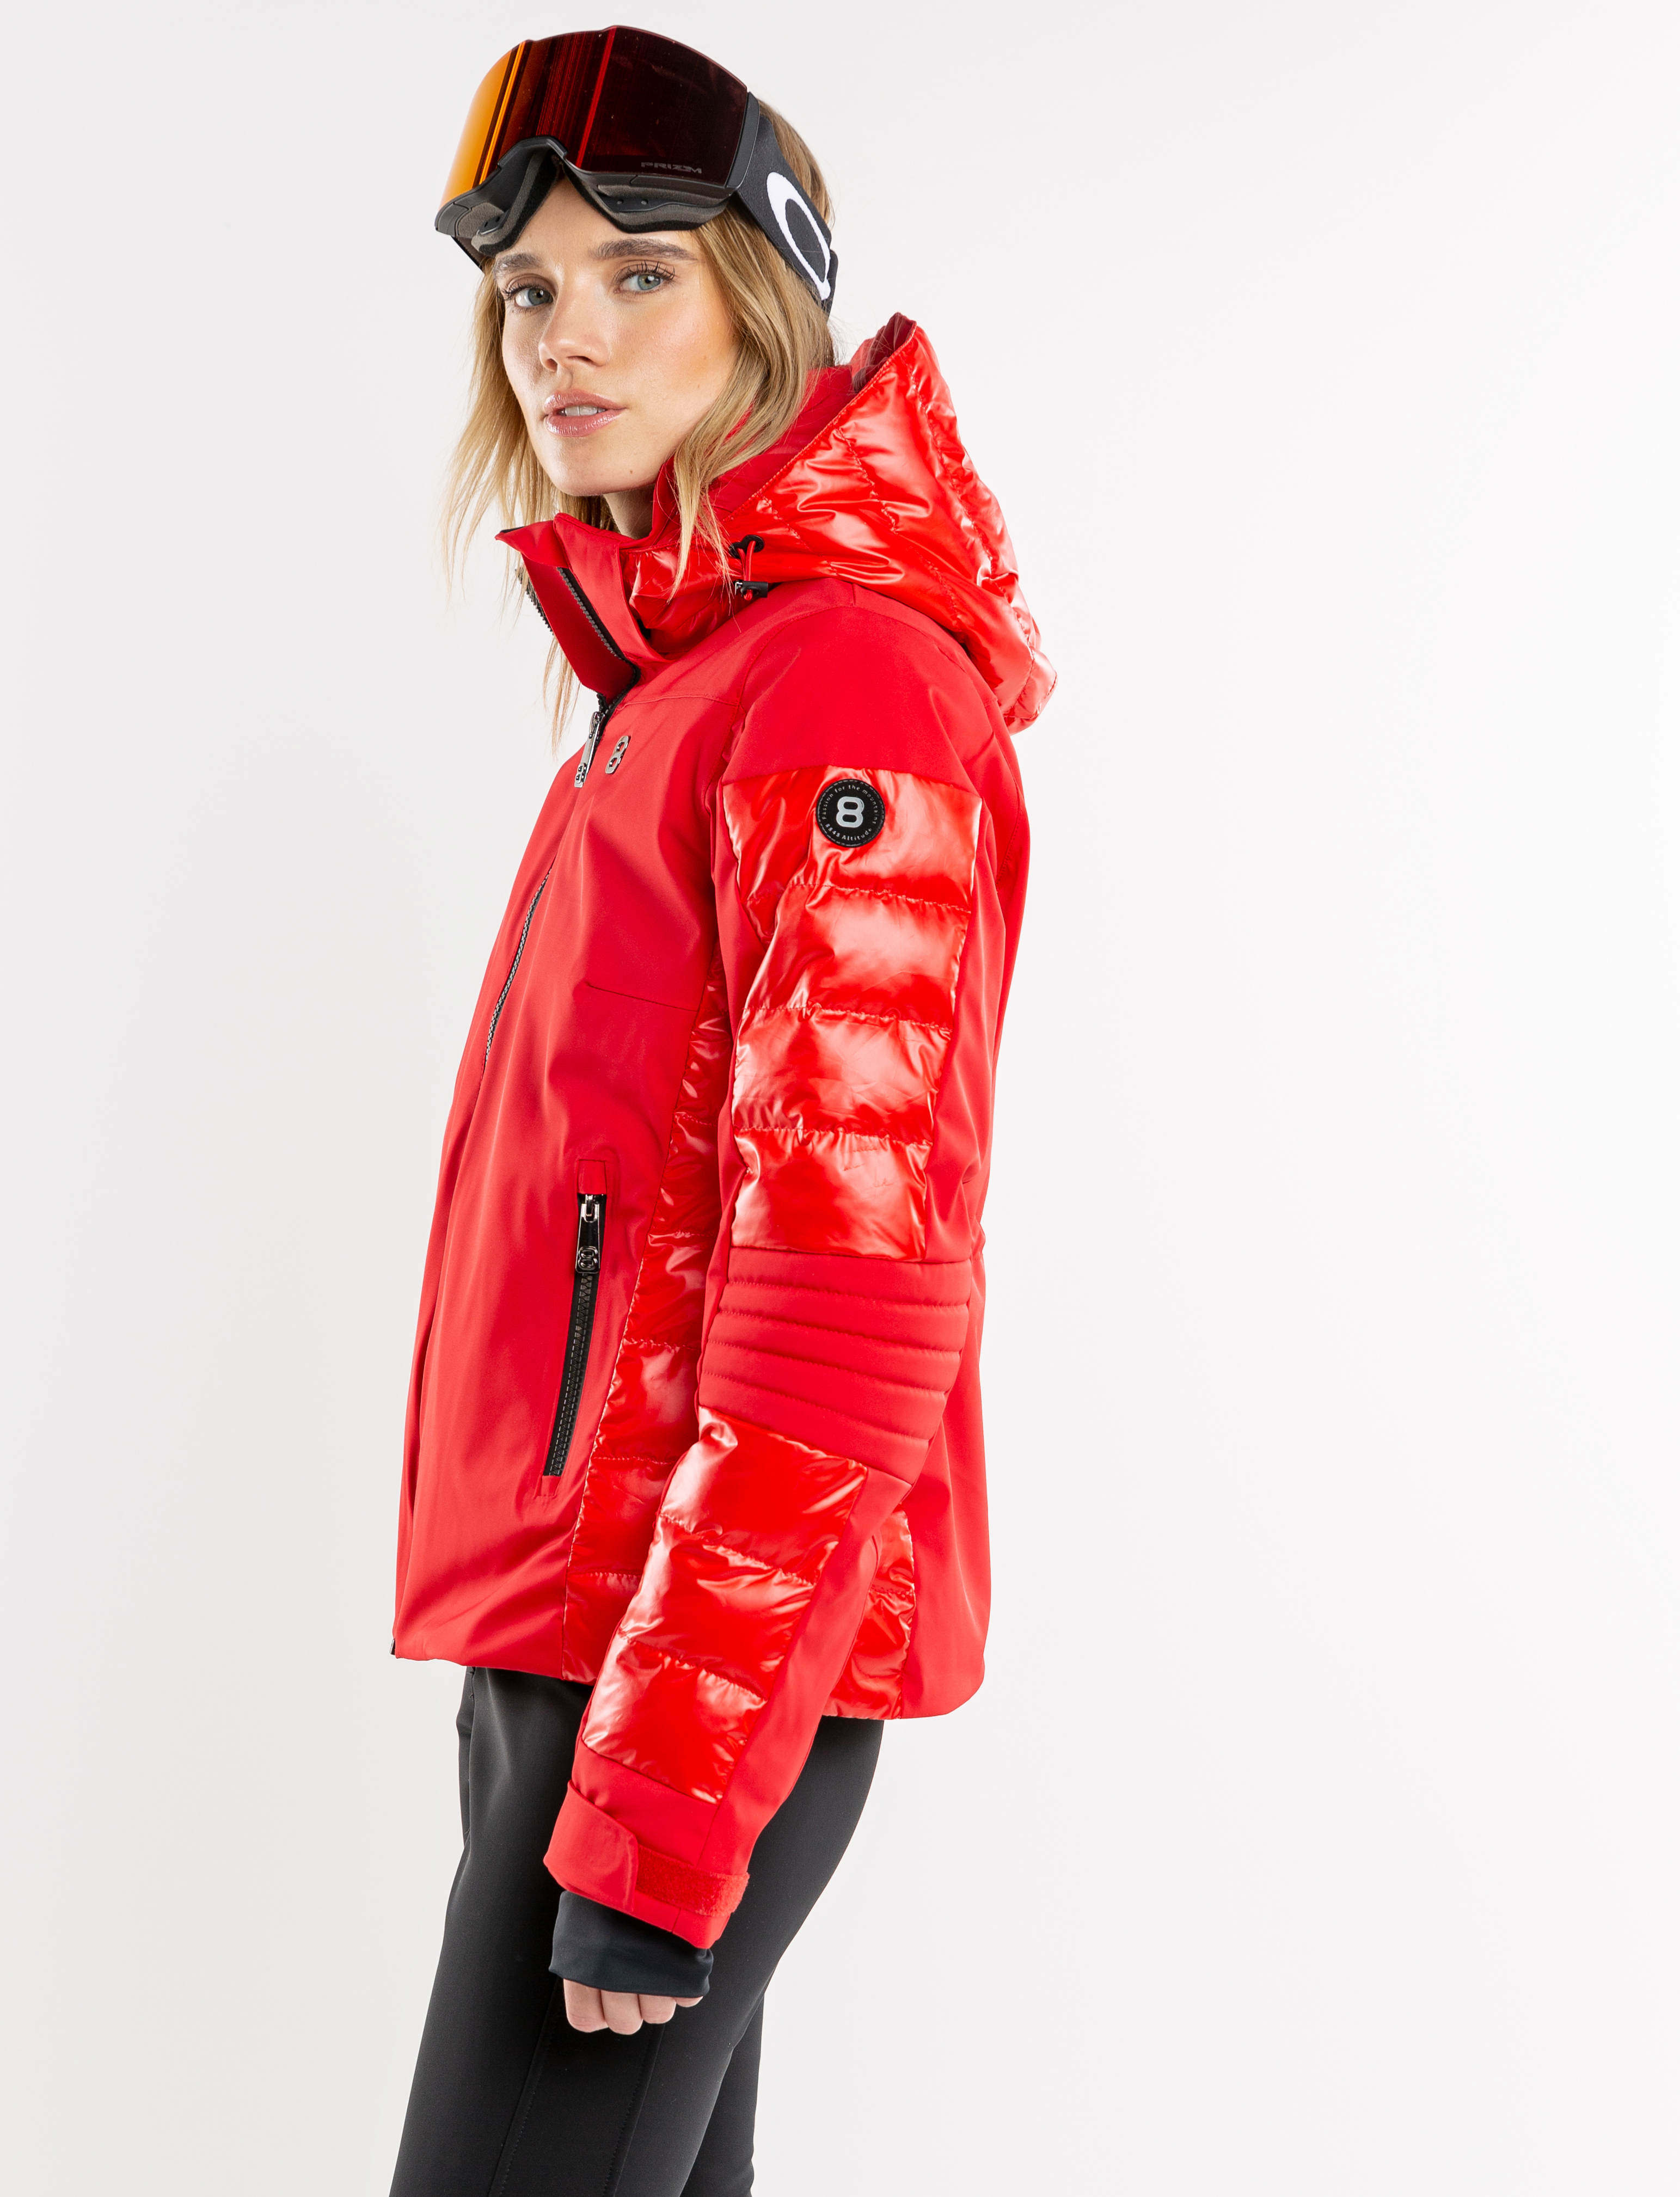 8848 Aliza dames ski-jack rood model 5